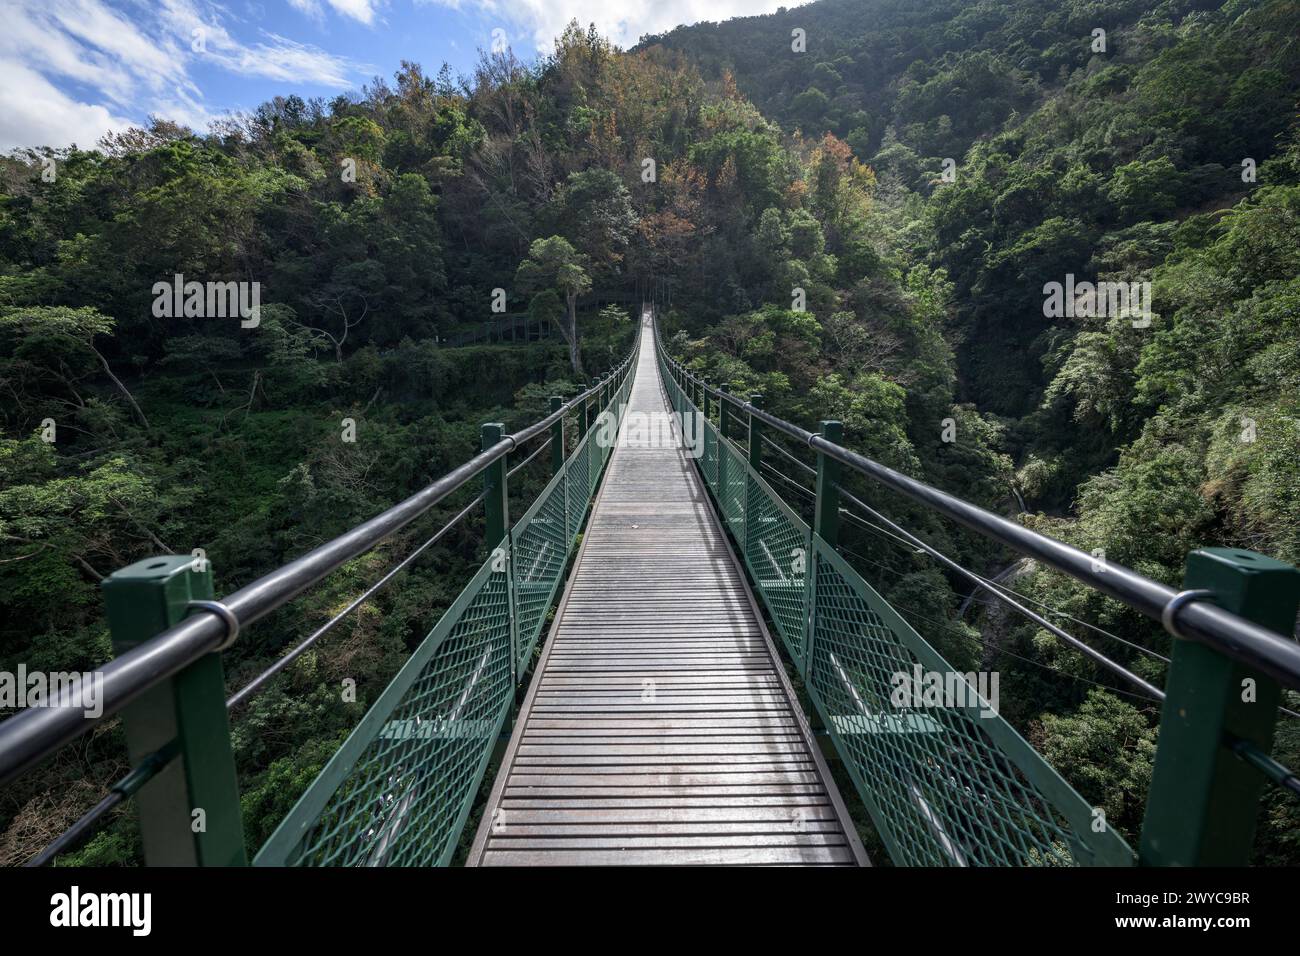 L'immagine cattura un ponte sospeso in legno circondato da una vegetazione lussureggiante Foto Stock